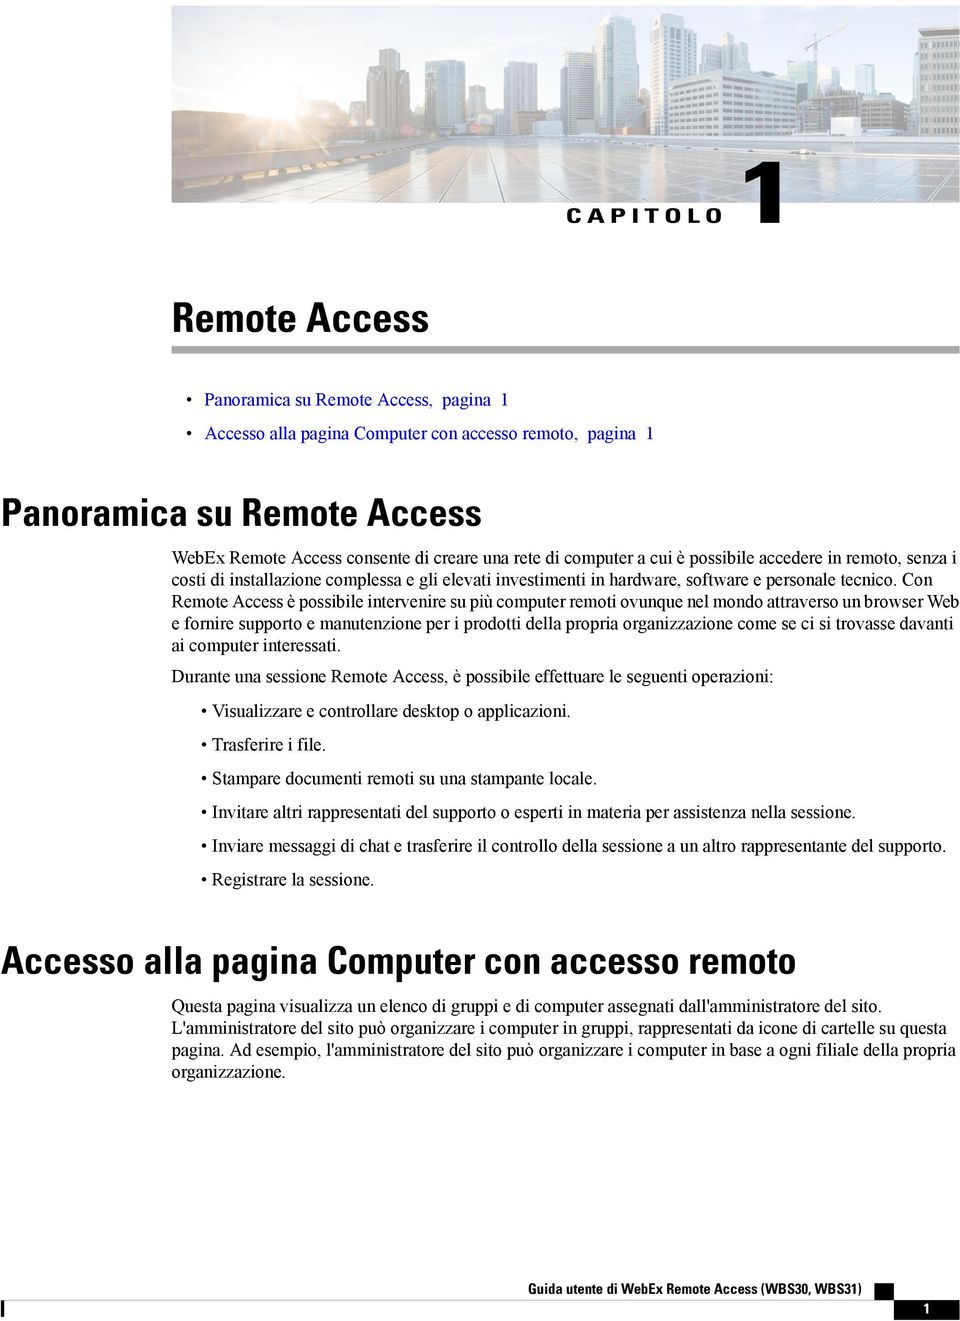 Con Remote Access è possibile intervenire su più computer remoti ovunque nel mondo attraverso un browser Web e fornire supporto e manutenzione per i prodotti della propria organizzazione come se ci